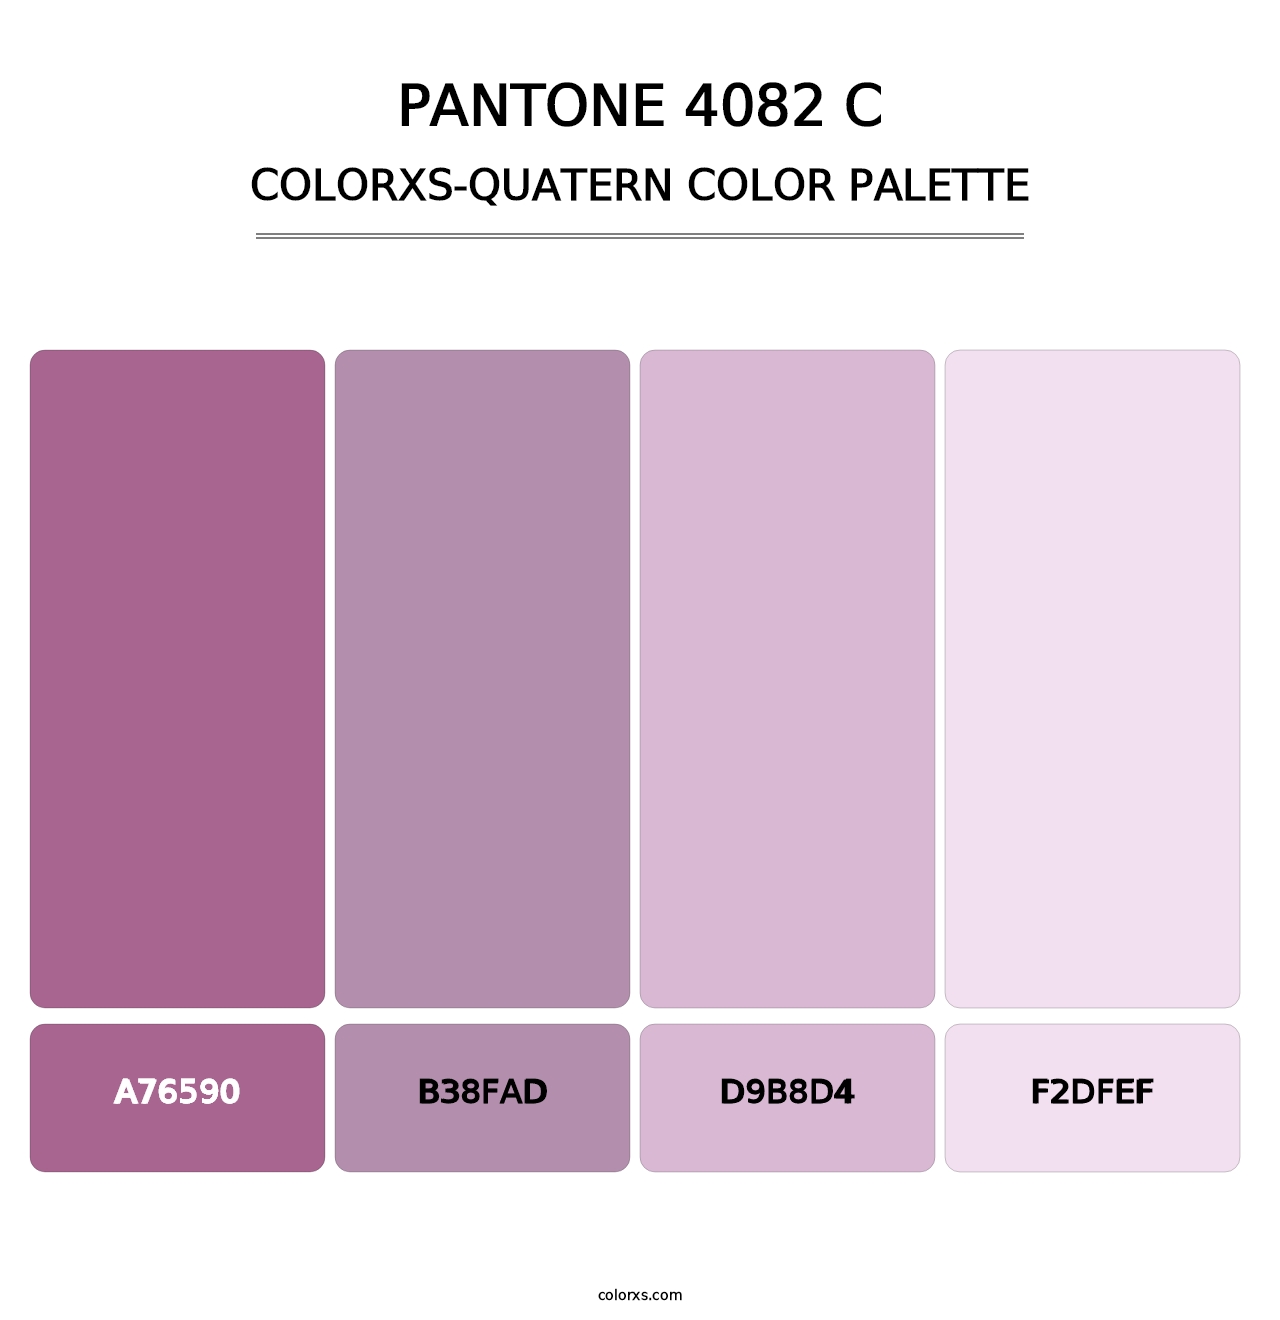 PANTONE 4082 C - Colorxs Quatern Palette